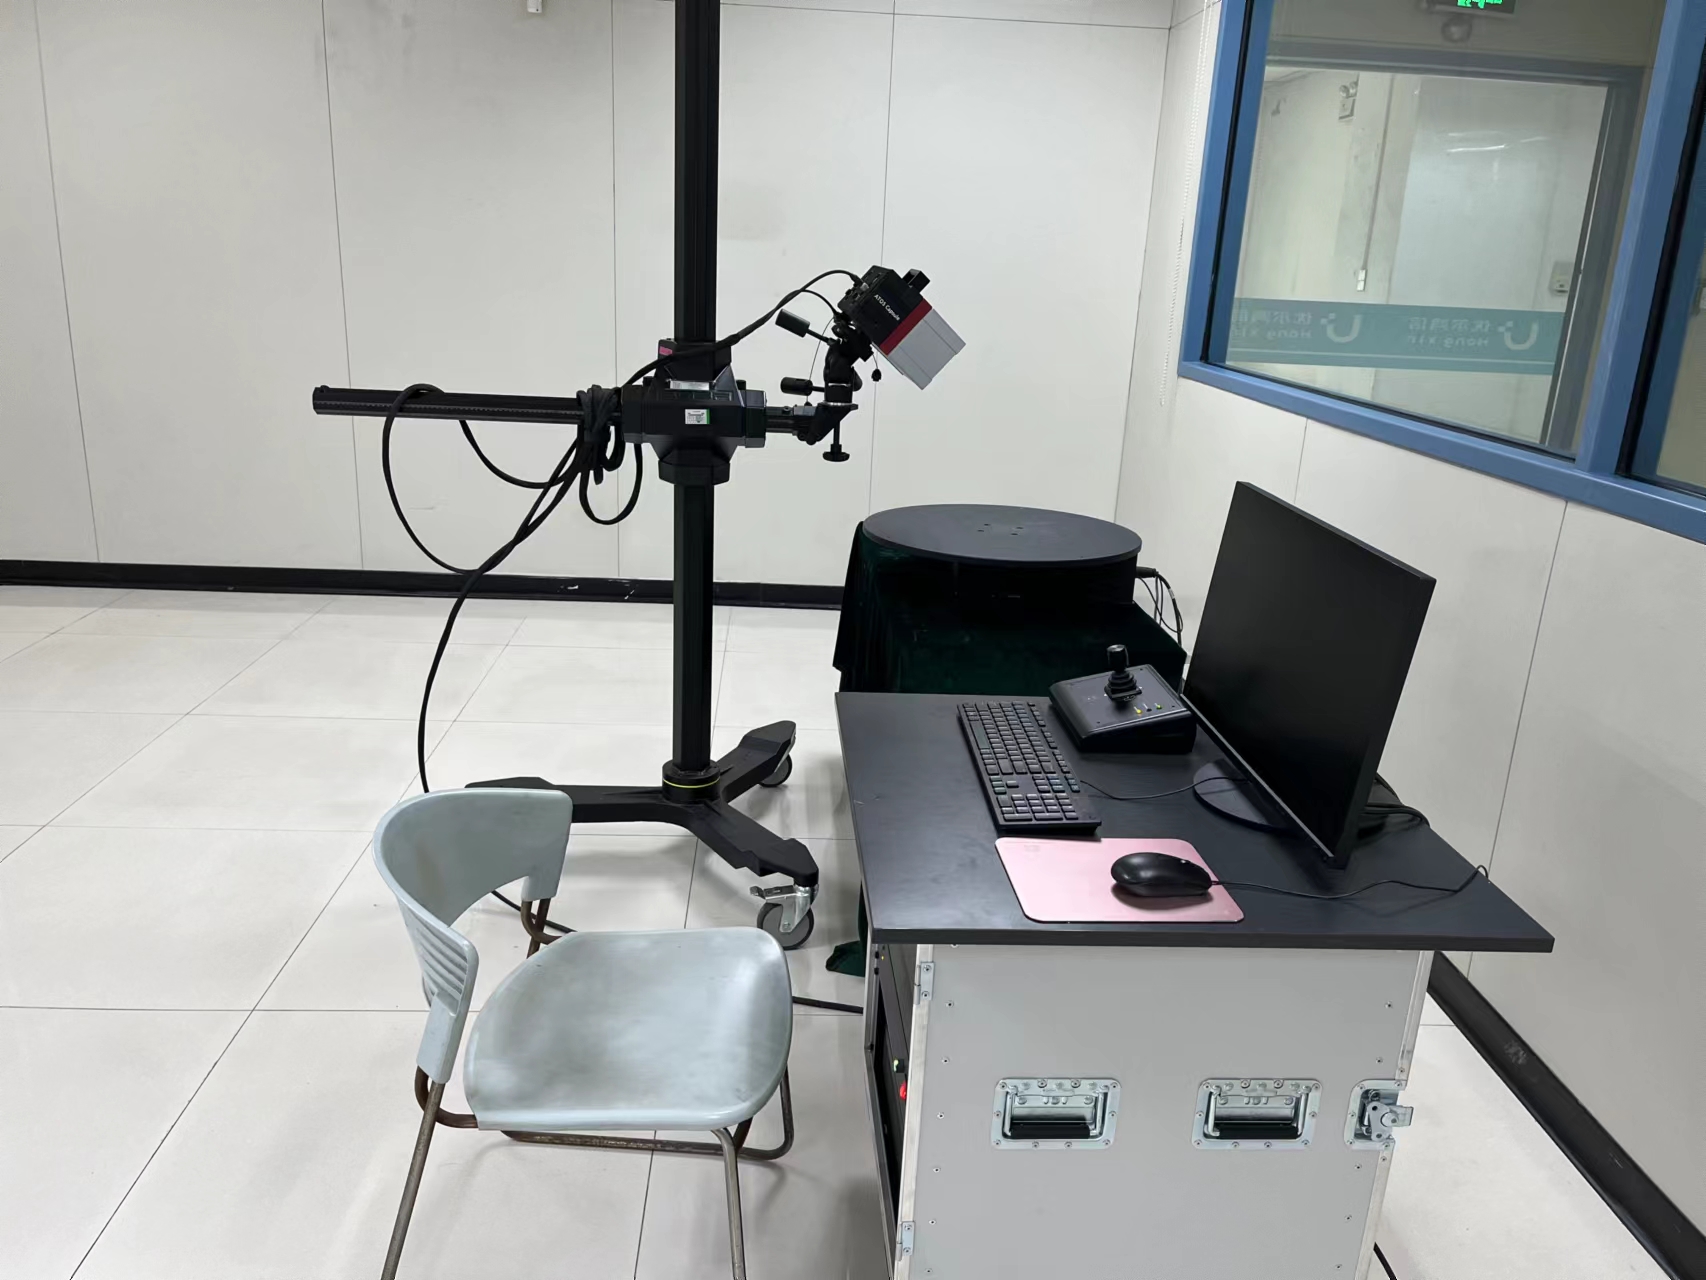 VR眼镜固定件尺寸检测-三坐标尺寸测量CNAS资质-三次元检测-综合性第三方检测 3D扫描测试